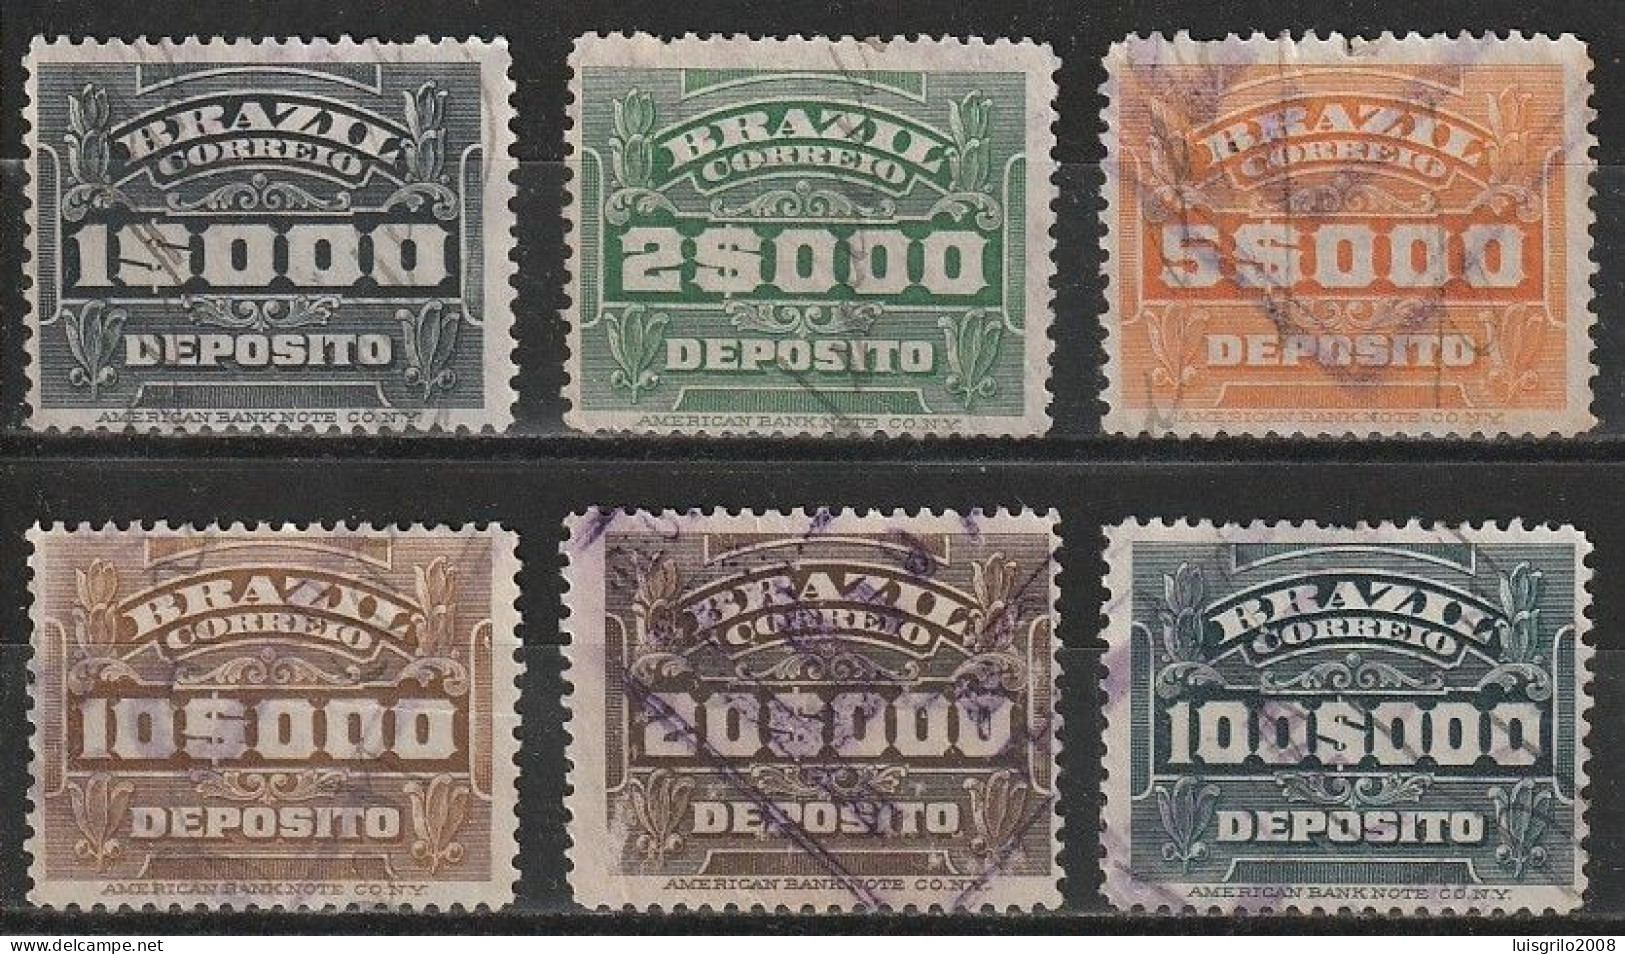 Revenue/ Fiscaux, Brazil 1920 - Depósito, Receita Fiscal -|- 1$000, 2$000, 5$000, 10$000, 20$000, 100$000 - Officials